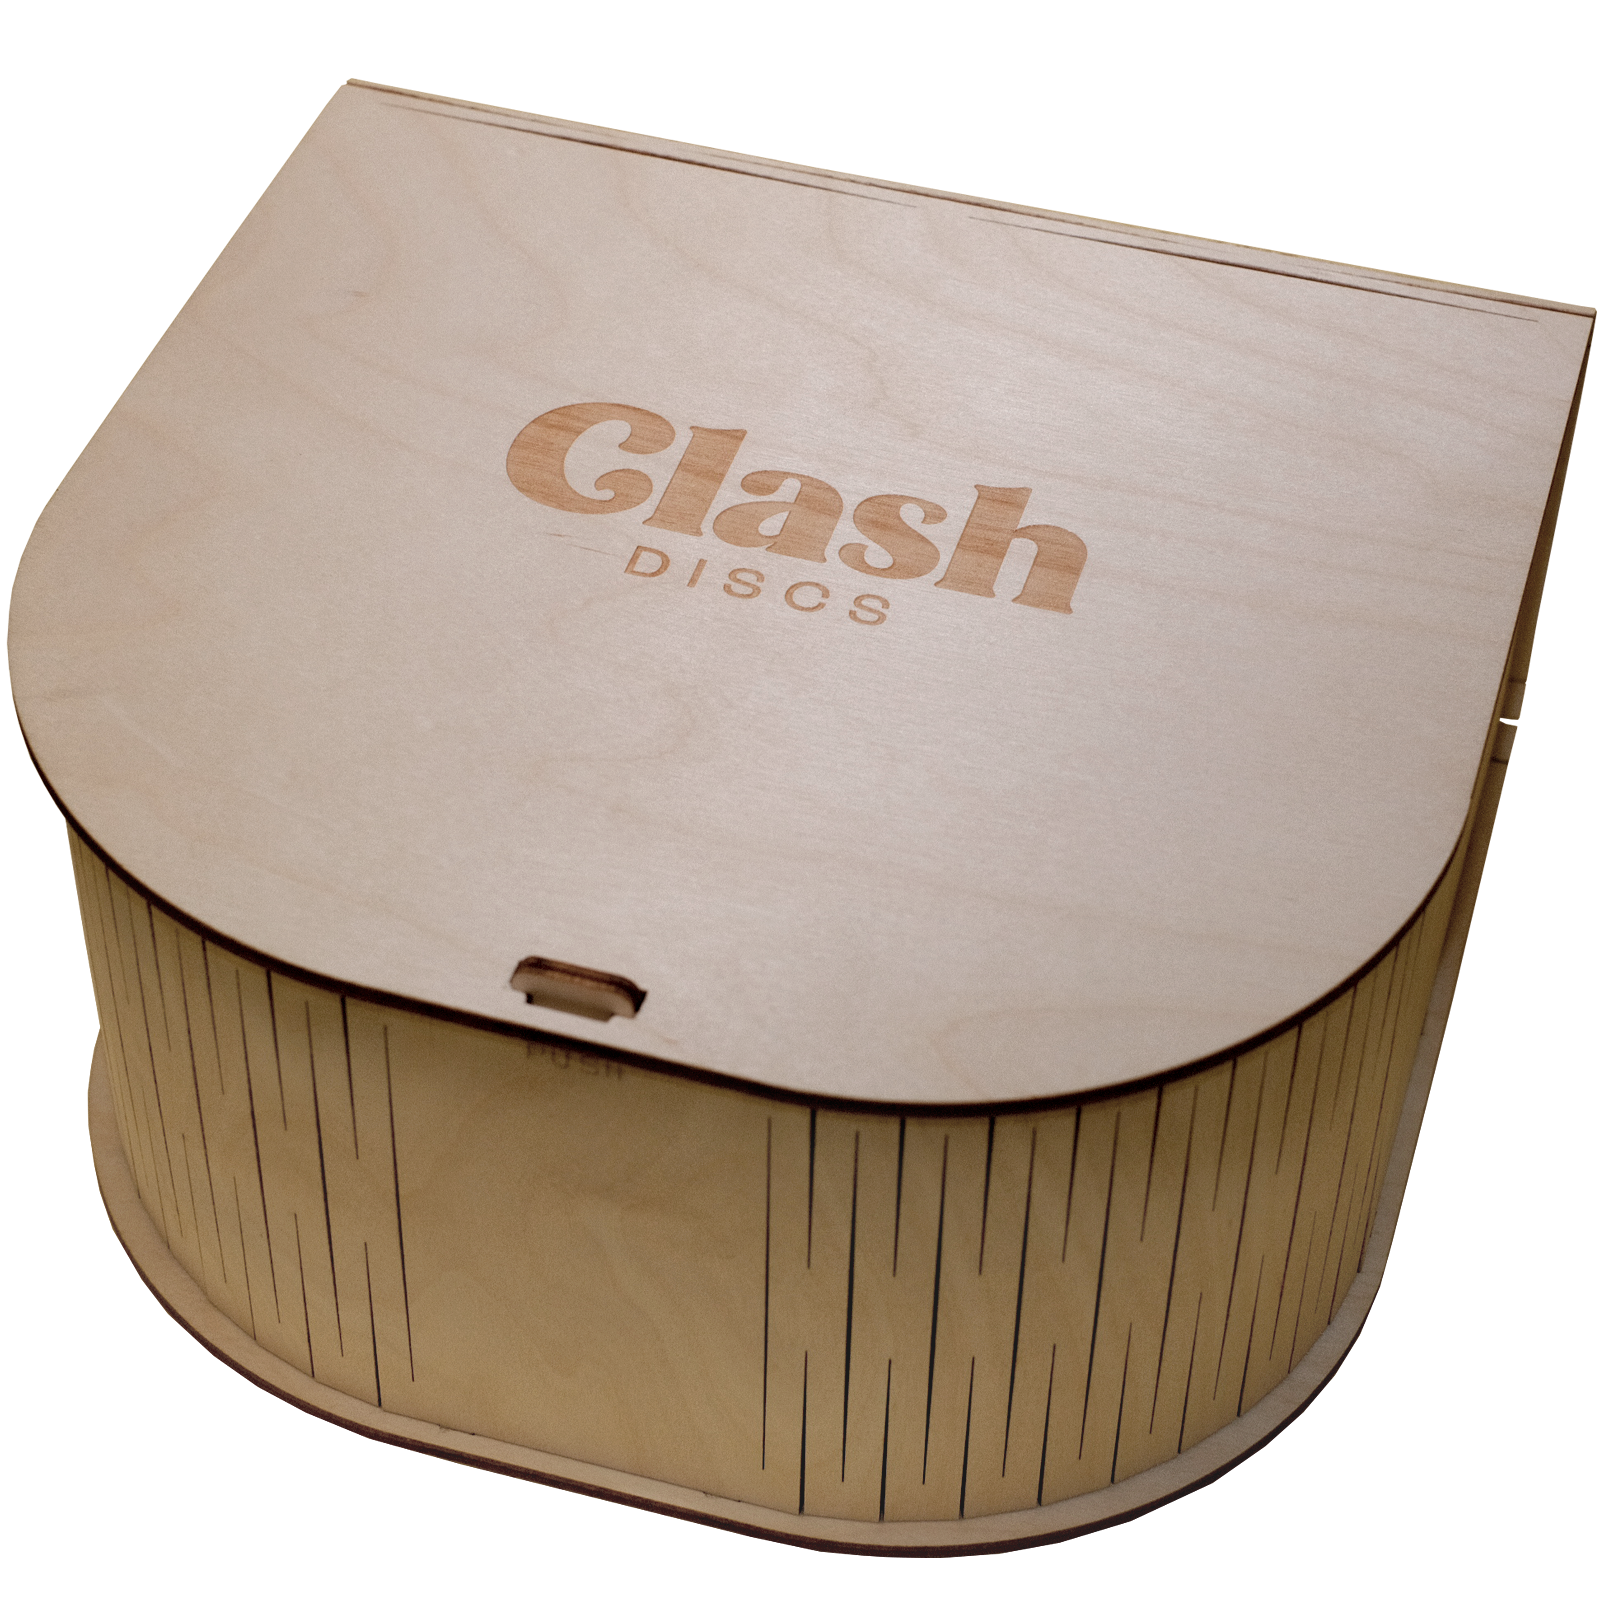 Clash Discs Box 2023